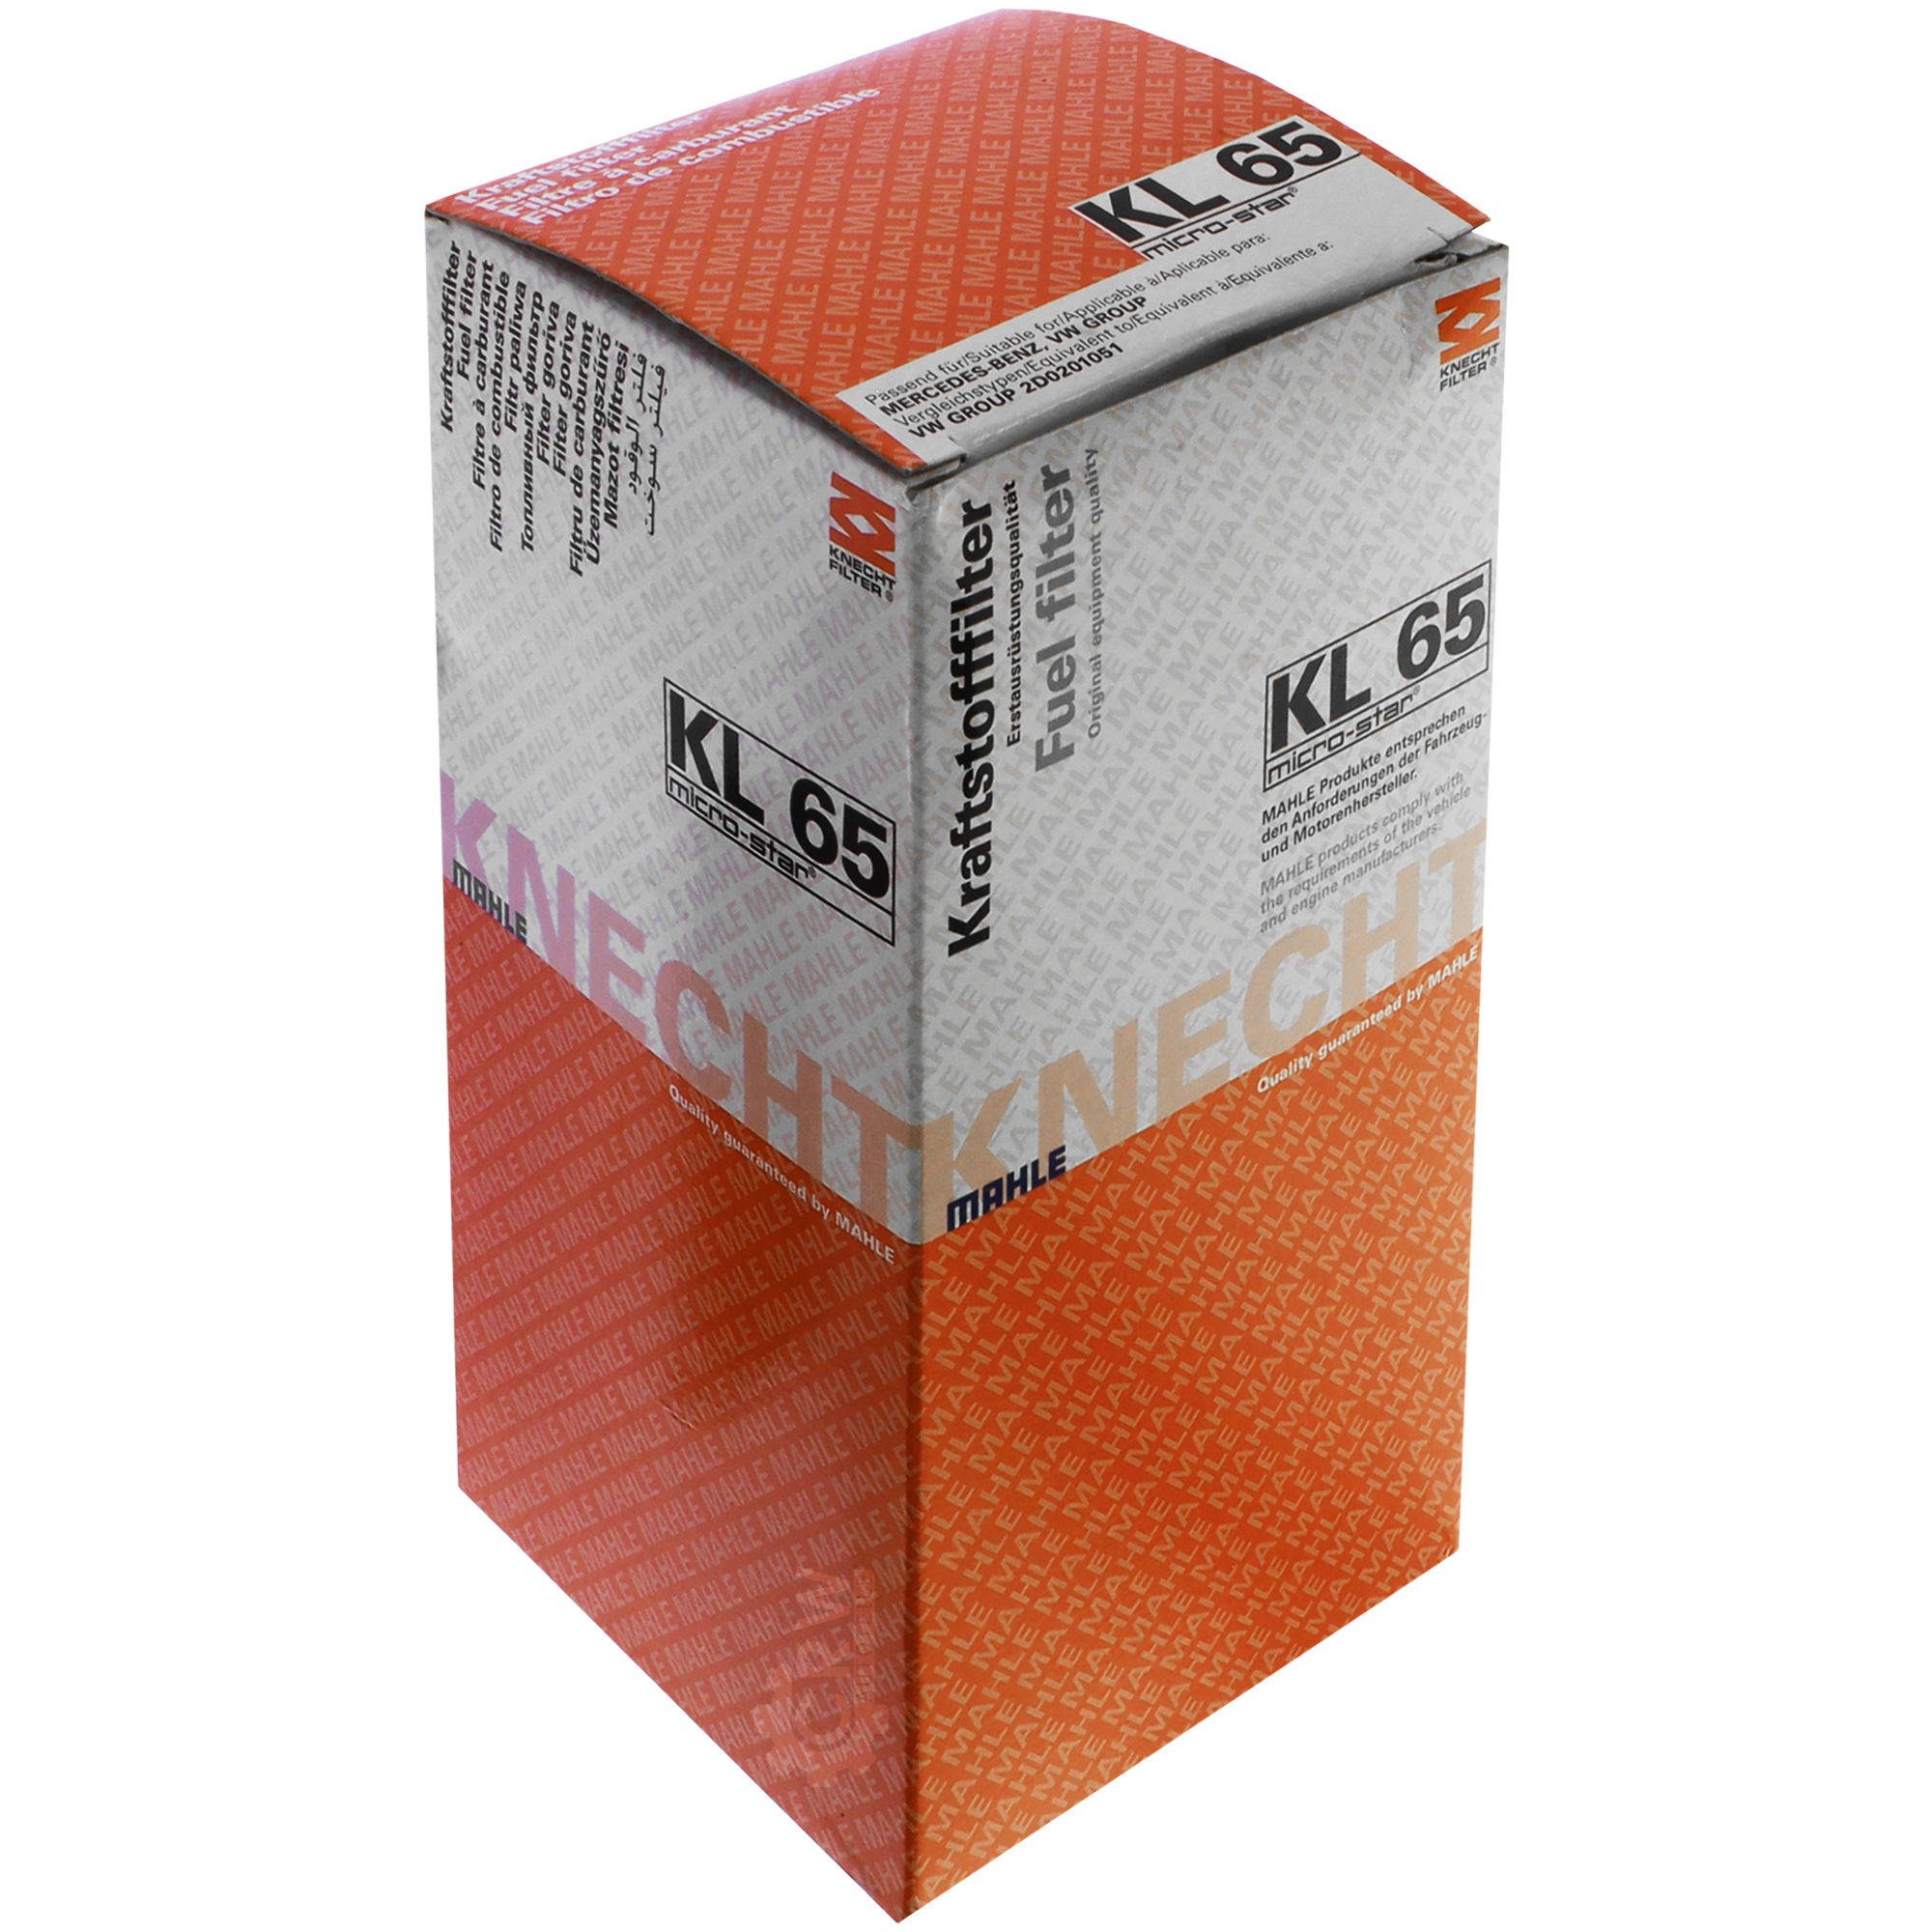 MAHLE Kraftstofffilter KL 65 Fuel Filter